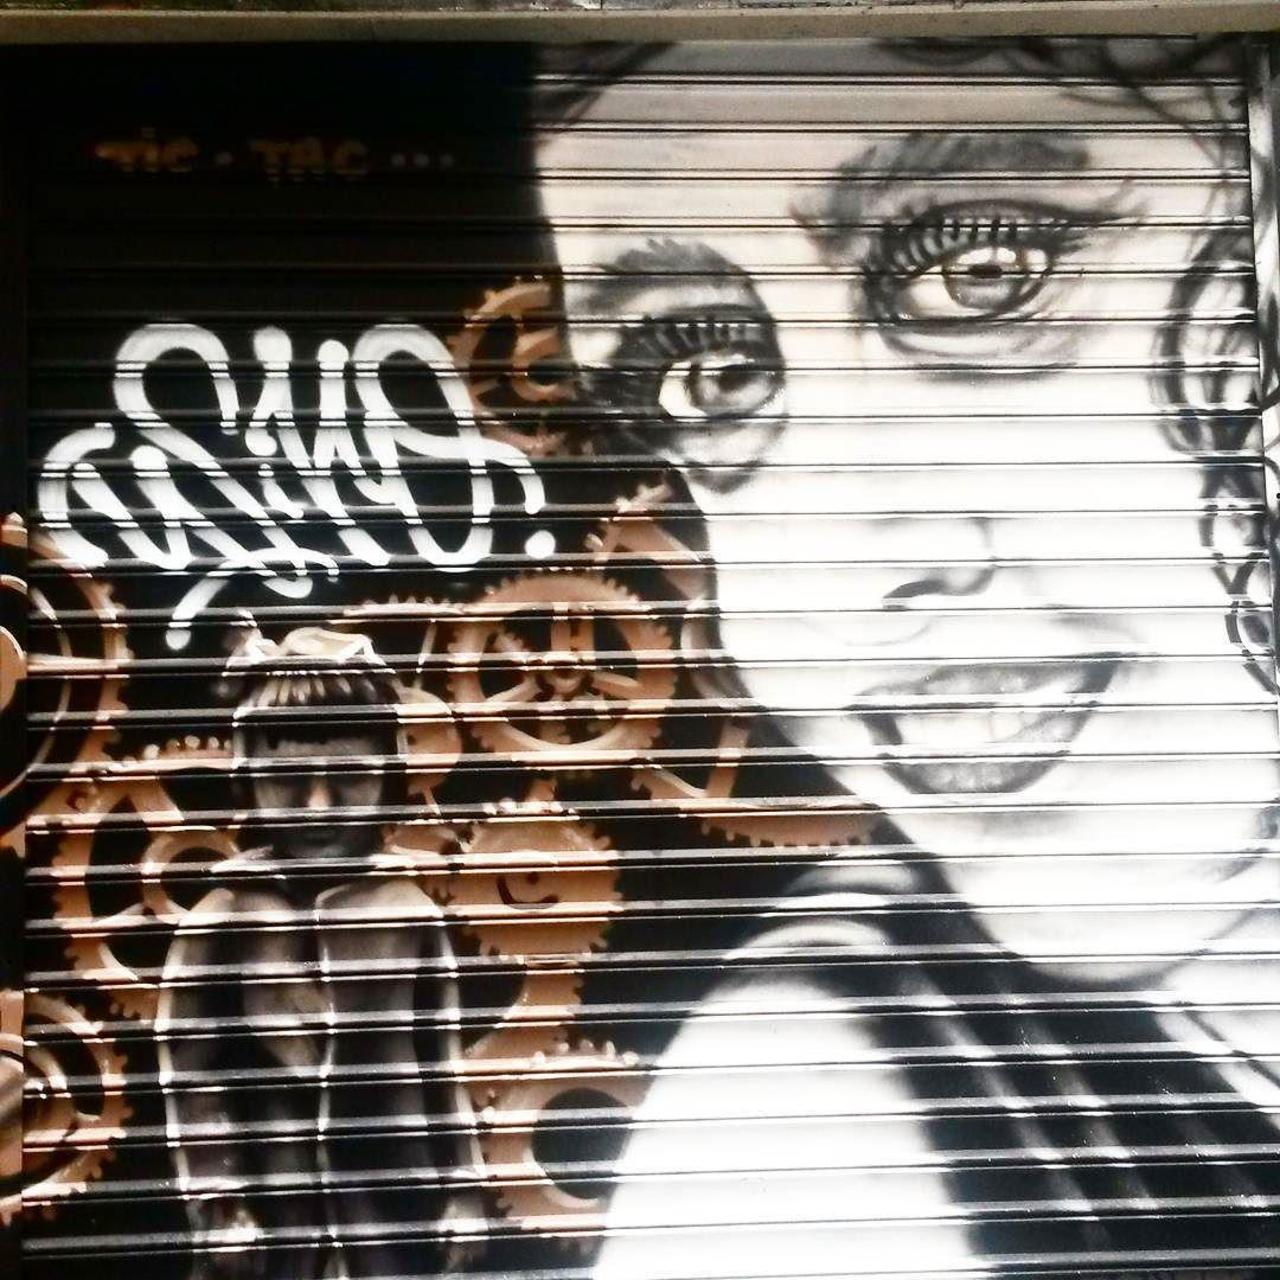 #Paris #graffiti photo by @princessepepett http://ift.tt/1MxgWDc #StreetArt http://t.co/ysrq17QNpA